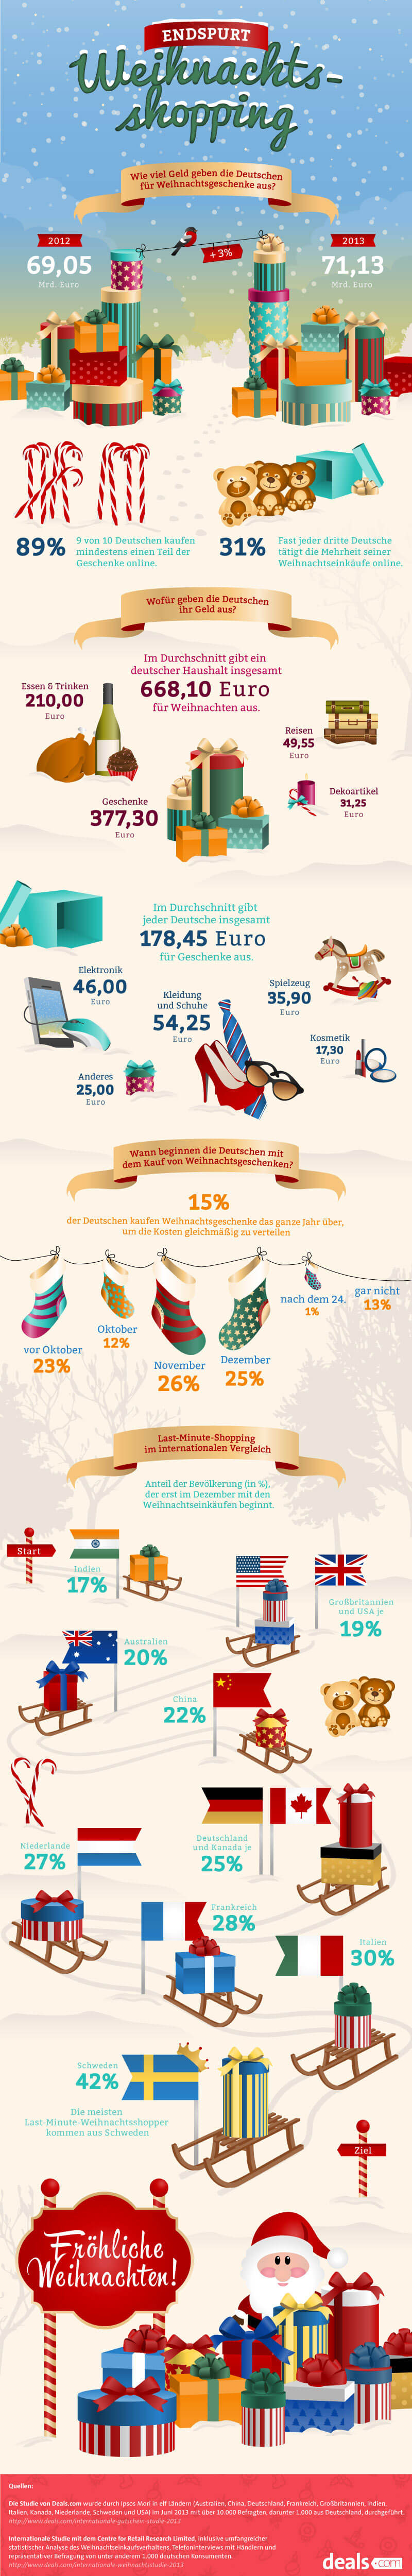 Weihnachten & Shopping: So kaufen die Deutschen ein! [Infografik]